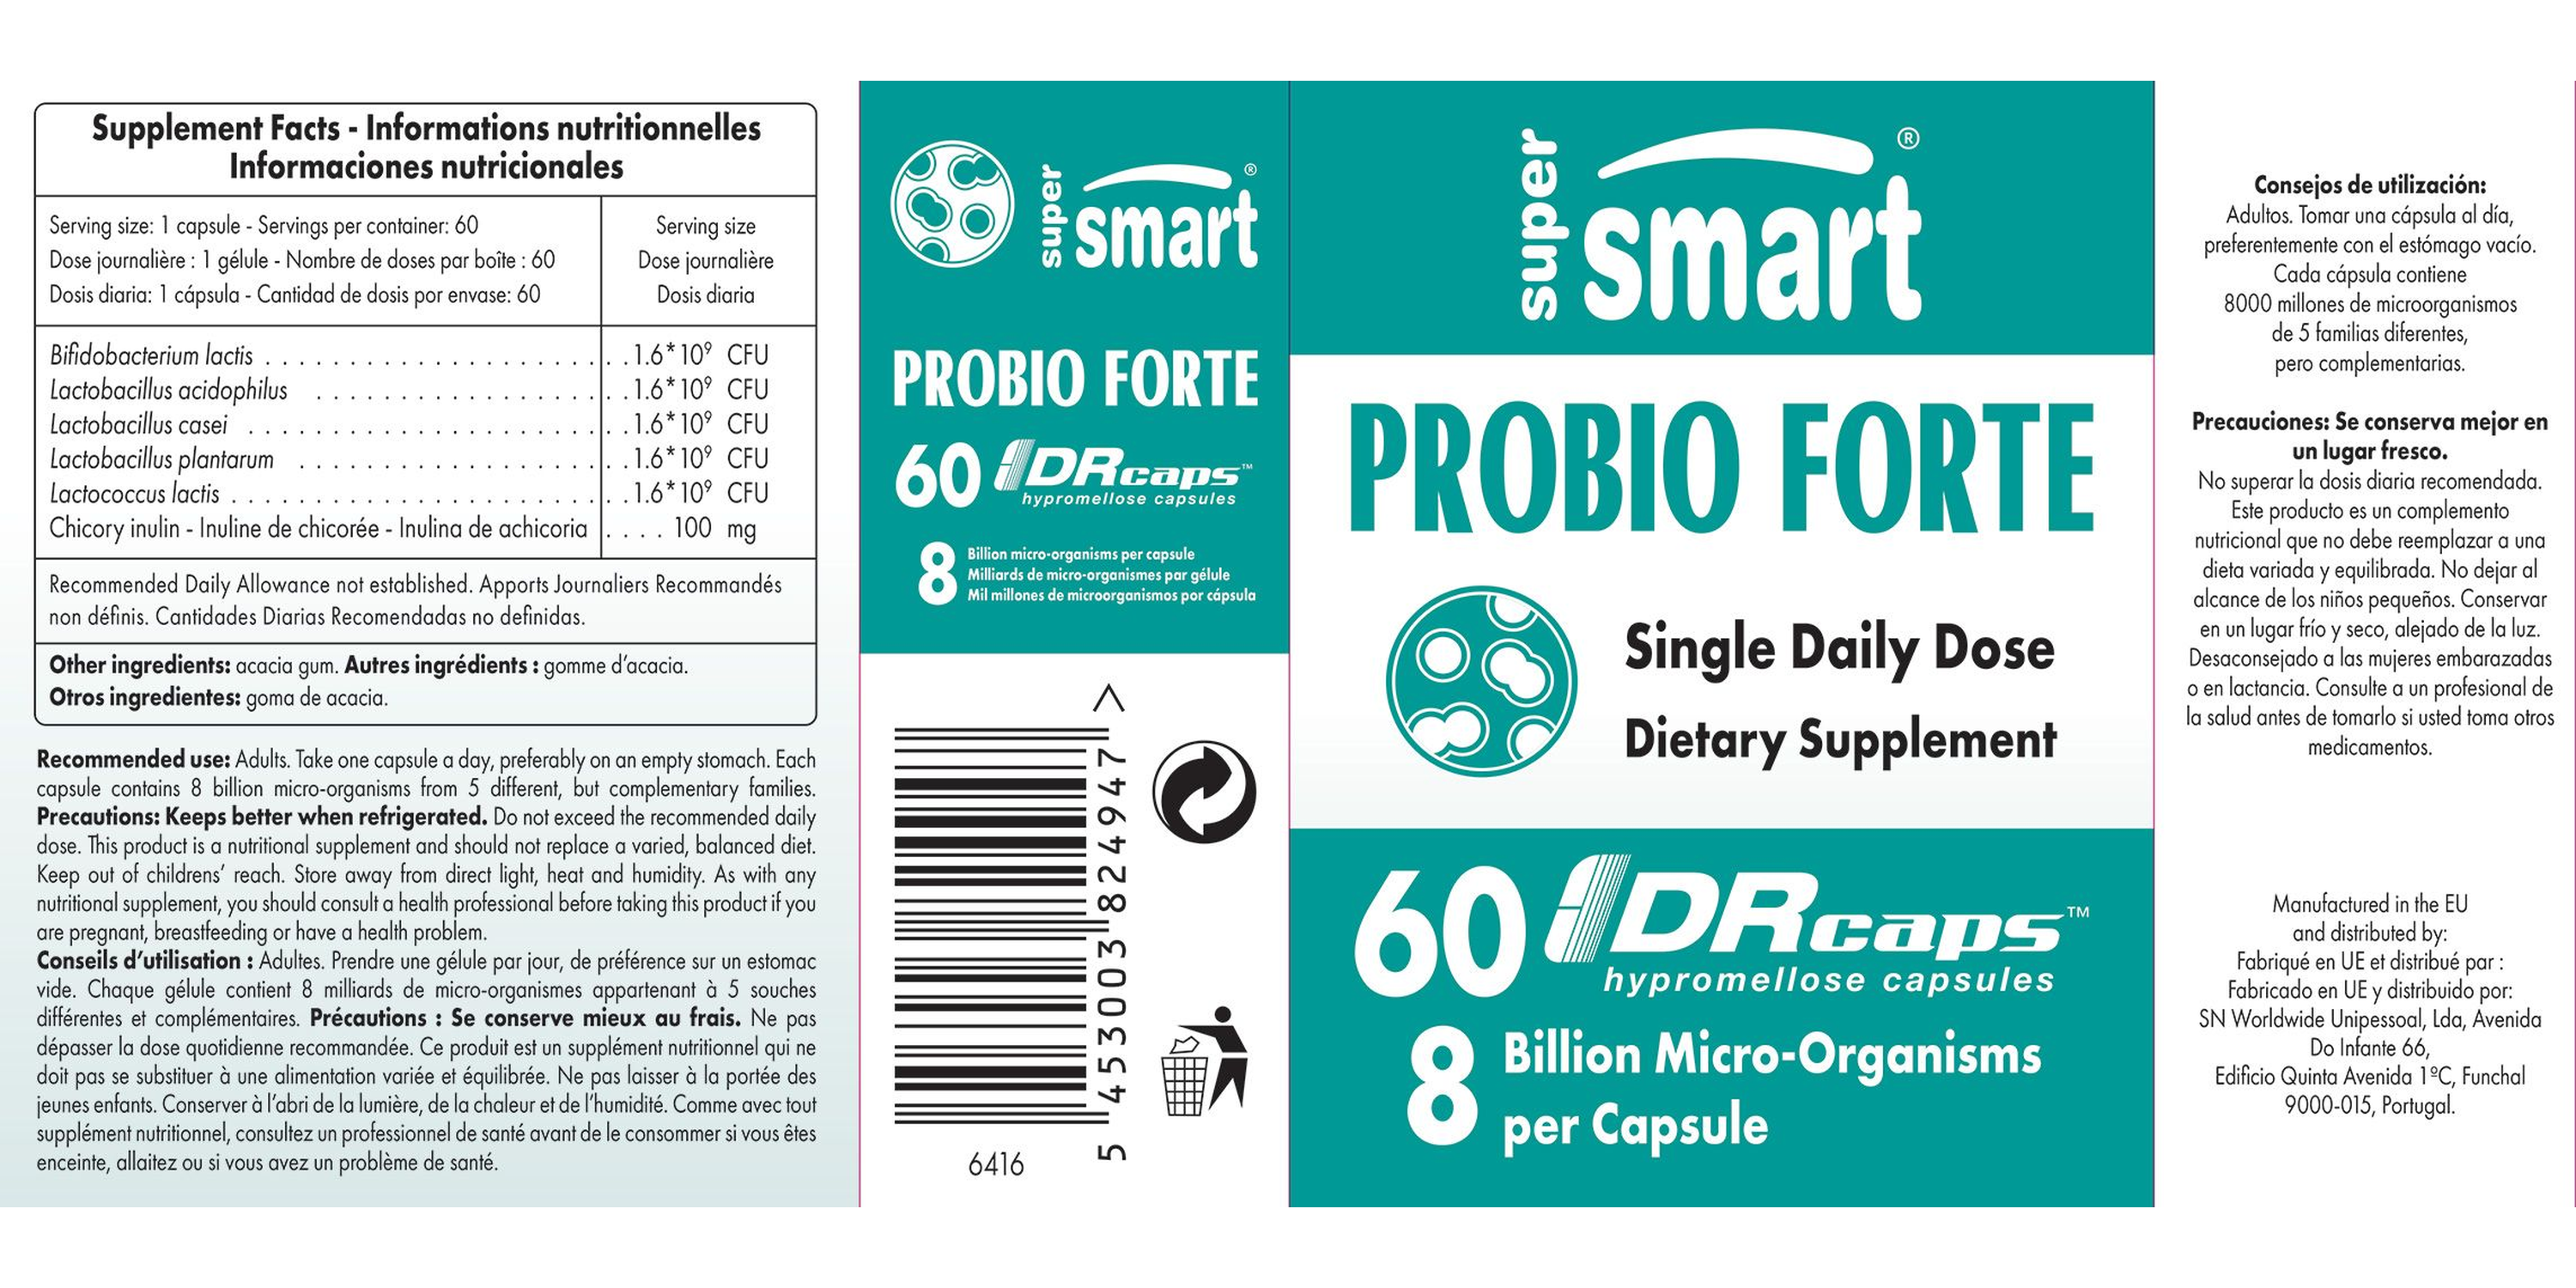 Probio Forte Supplement